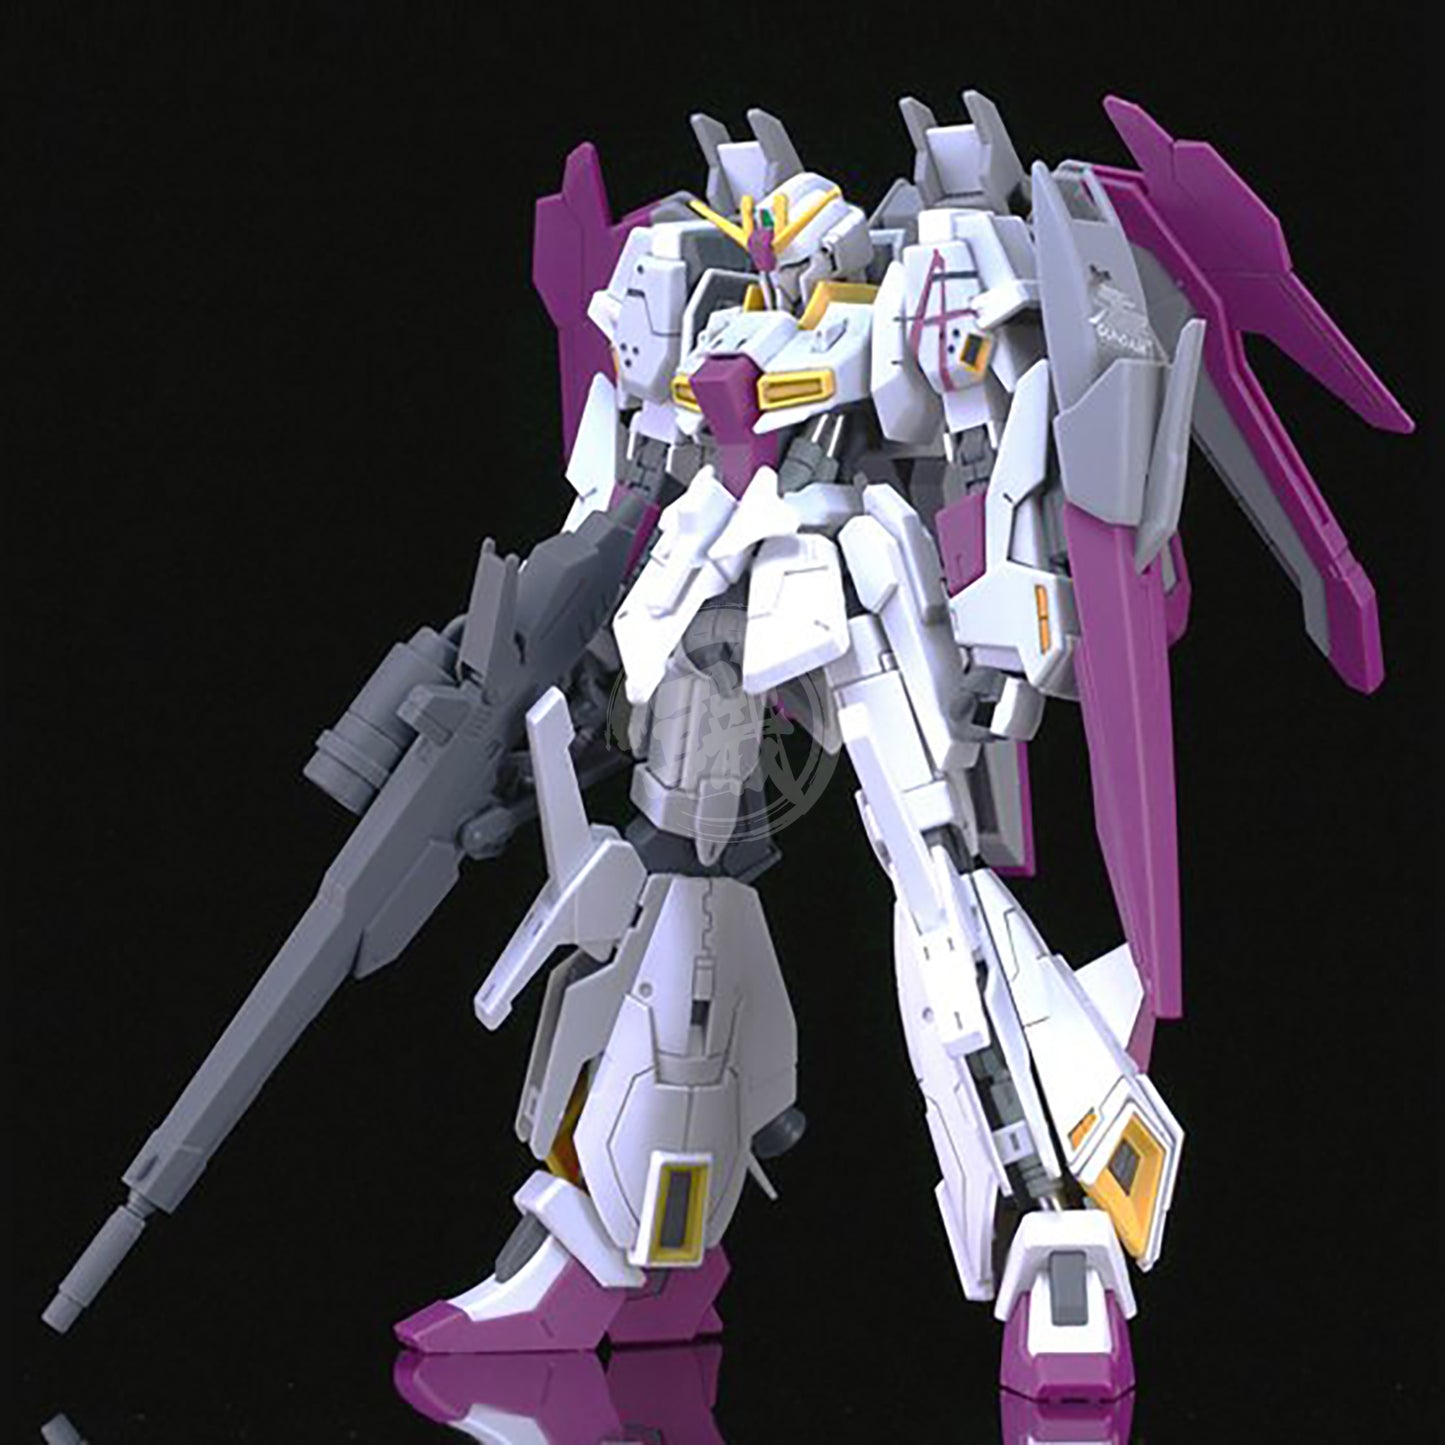 HG Lightning Zeta Gundam ASPROS - ShokuninGunpla